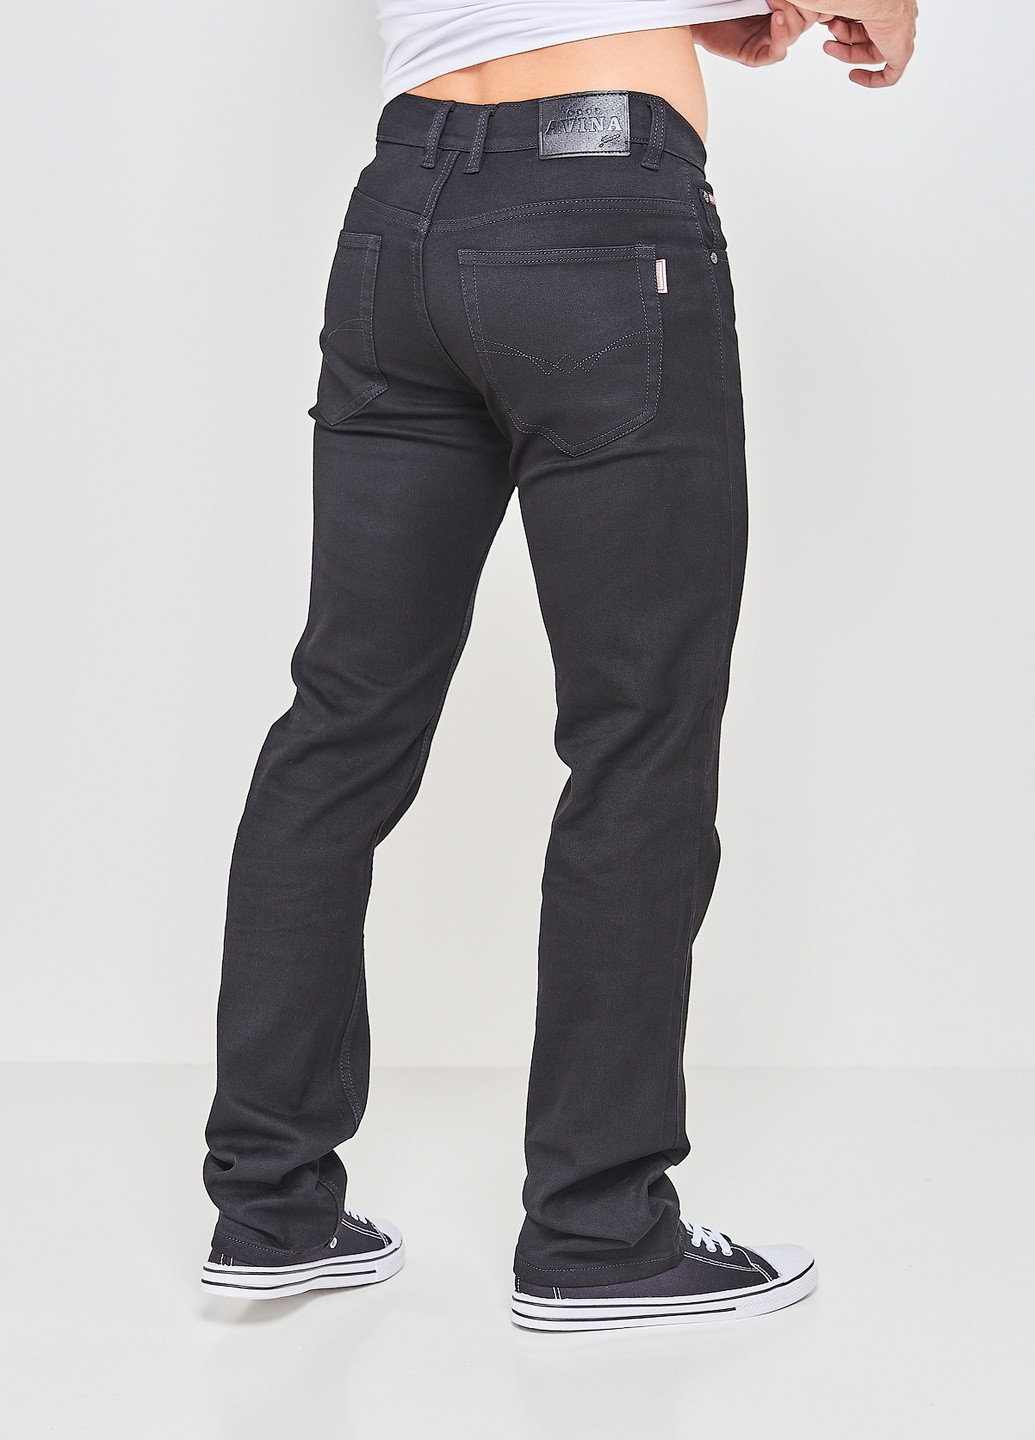 Черные демисезонные джинсы goodavina 8001-3 38 черный (2000904474714) Good Avina